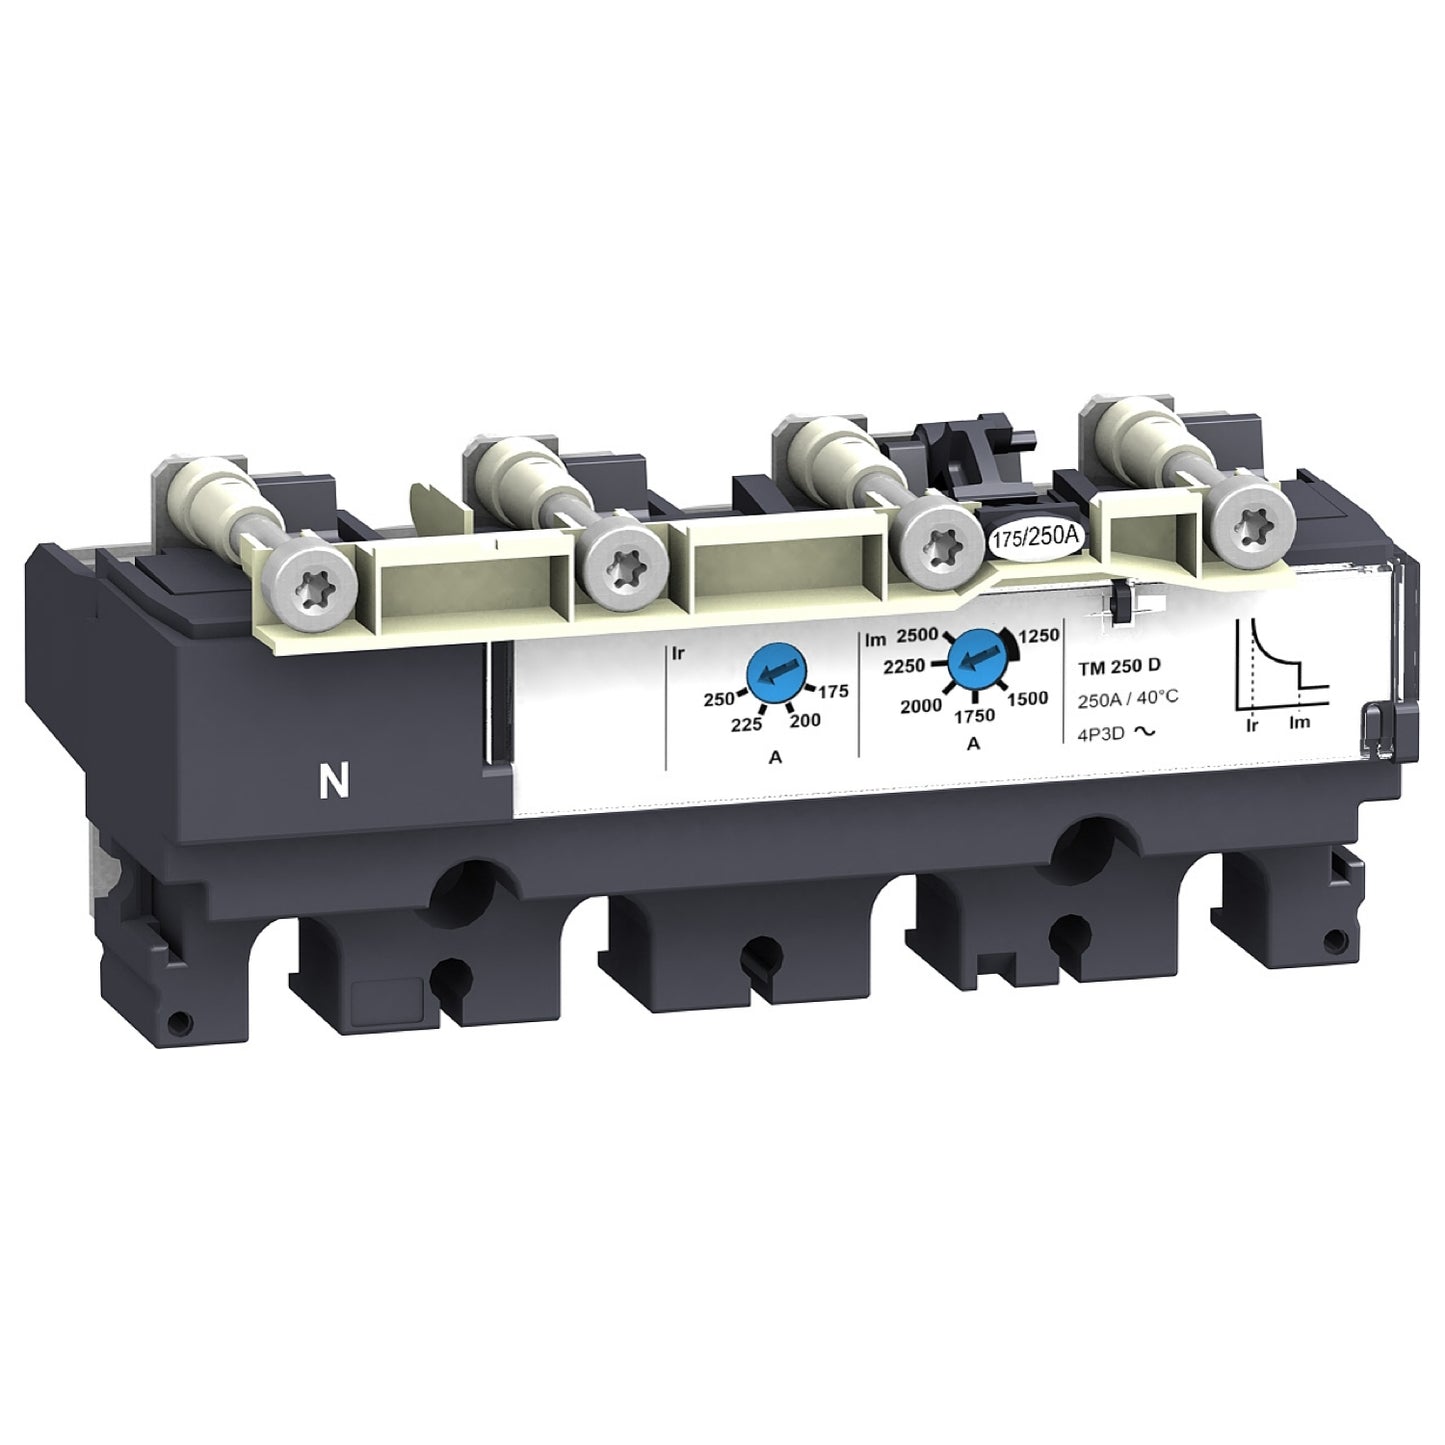 LV429043 Trip unit TM50D for NSX100/160 circuit breakers